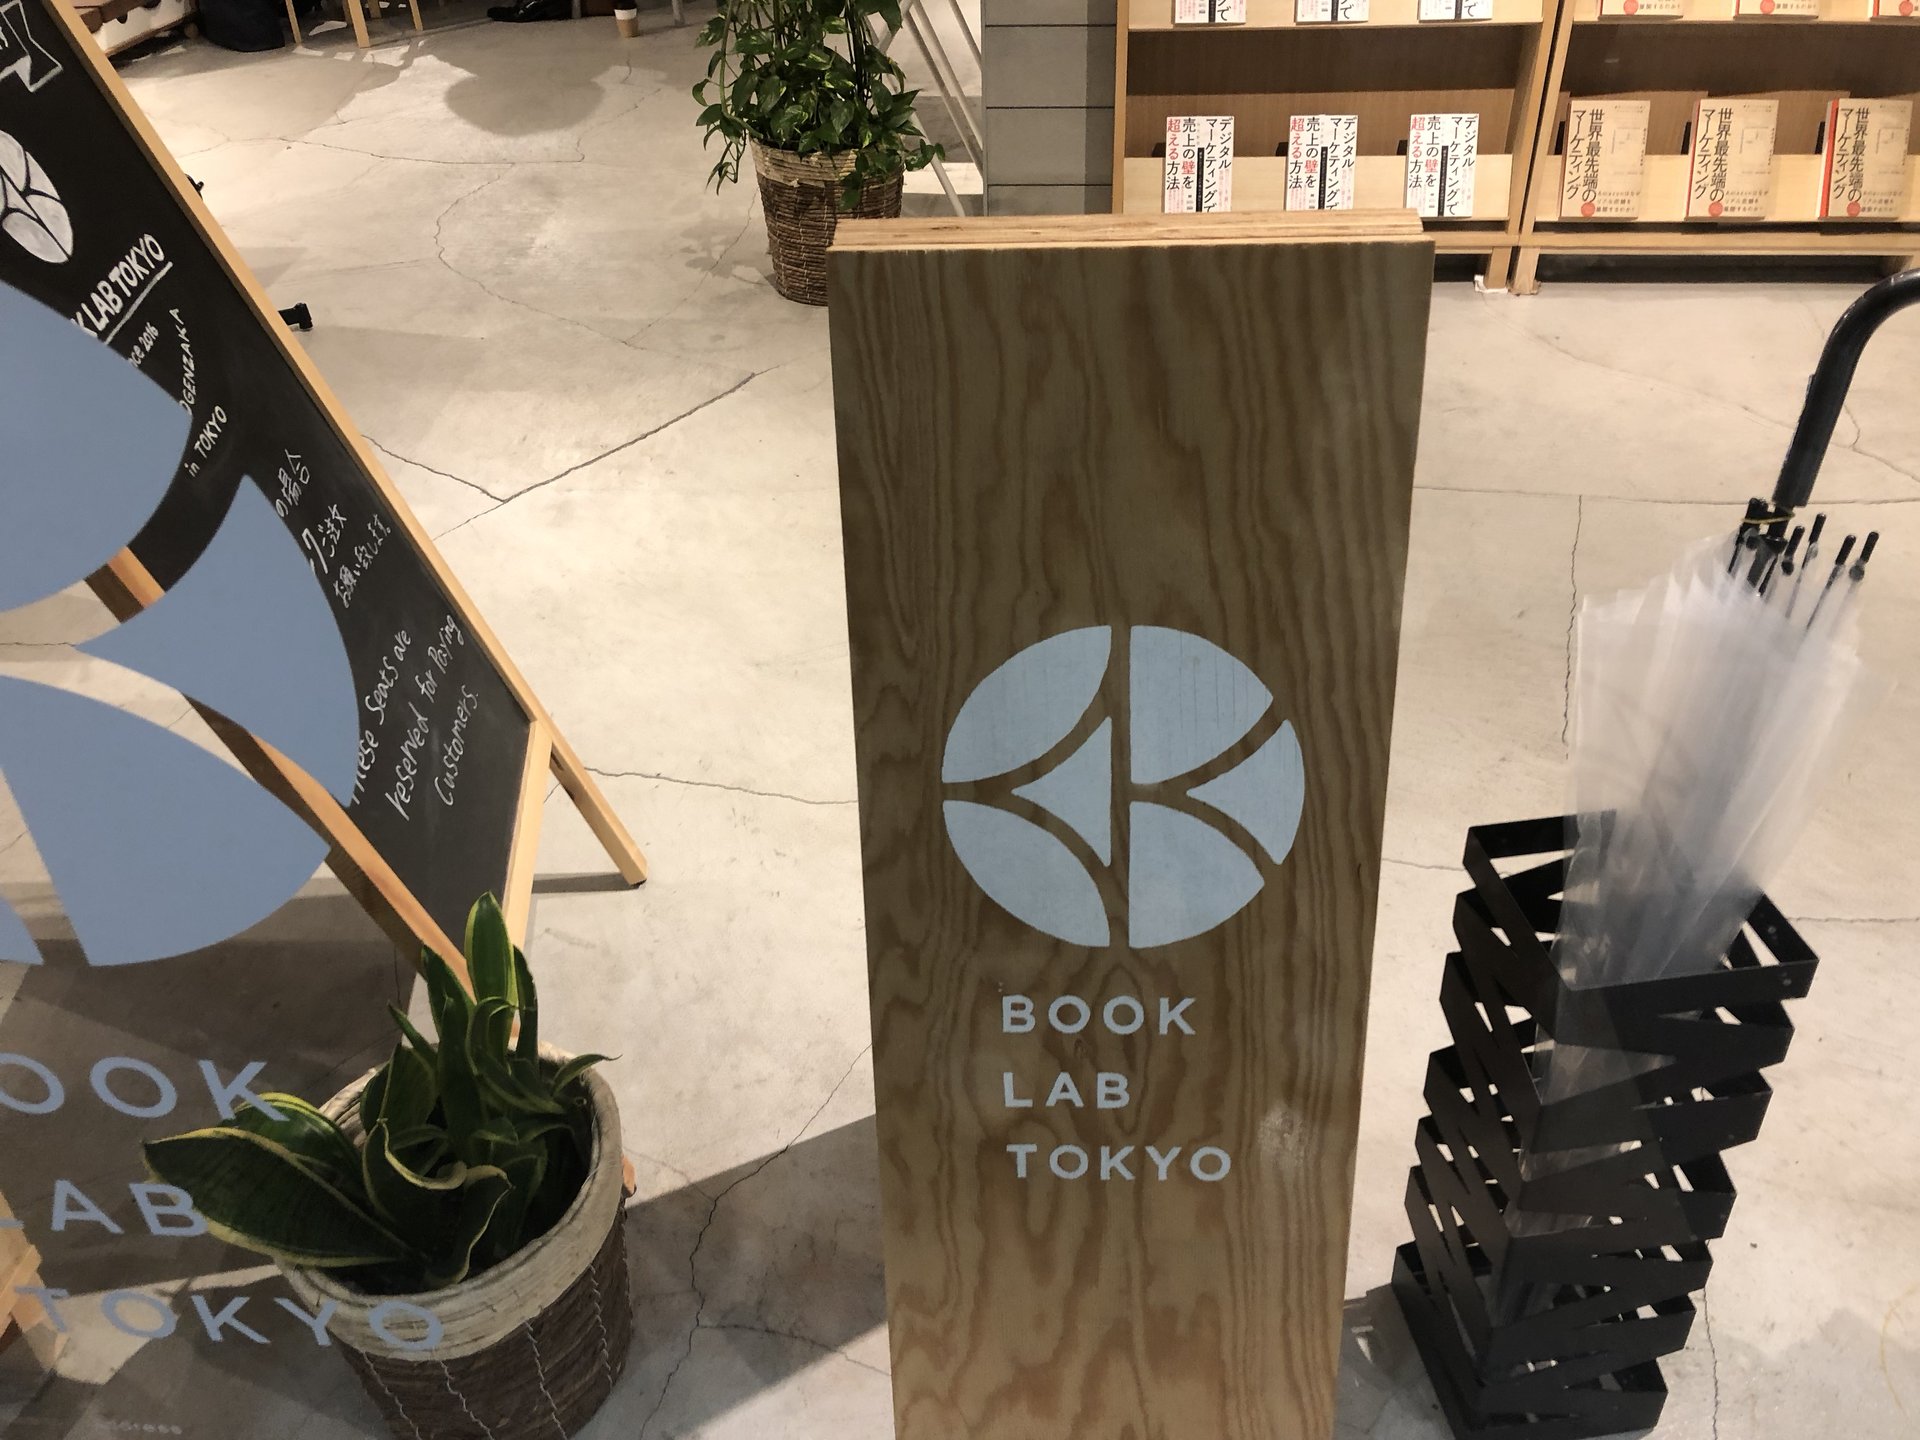 BOOK LAB TOKYO